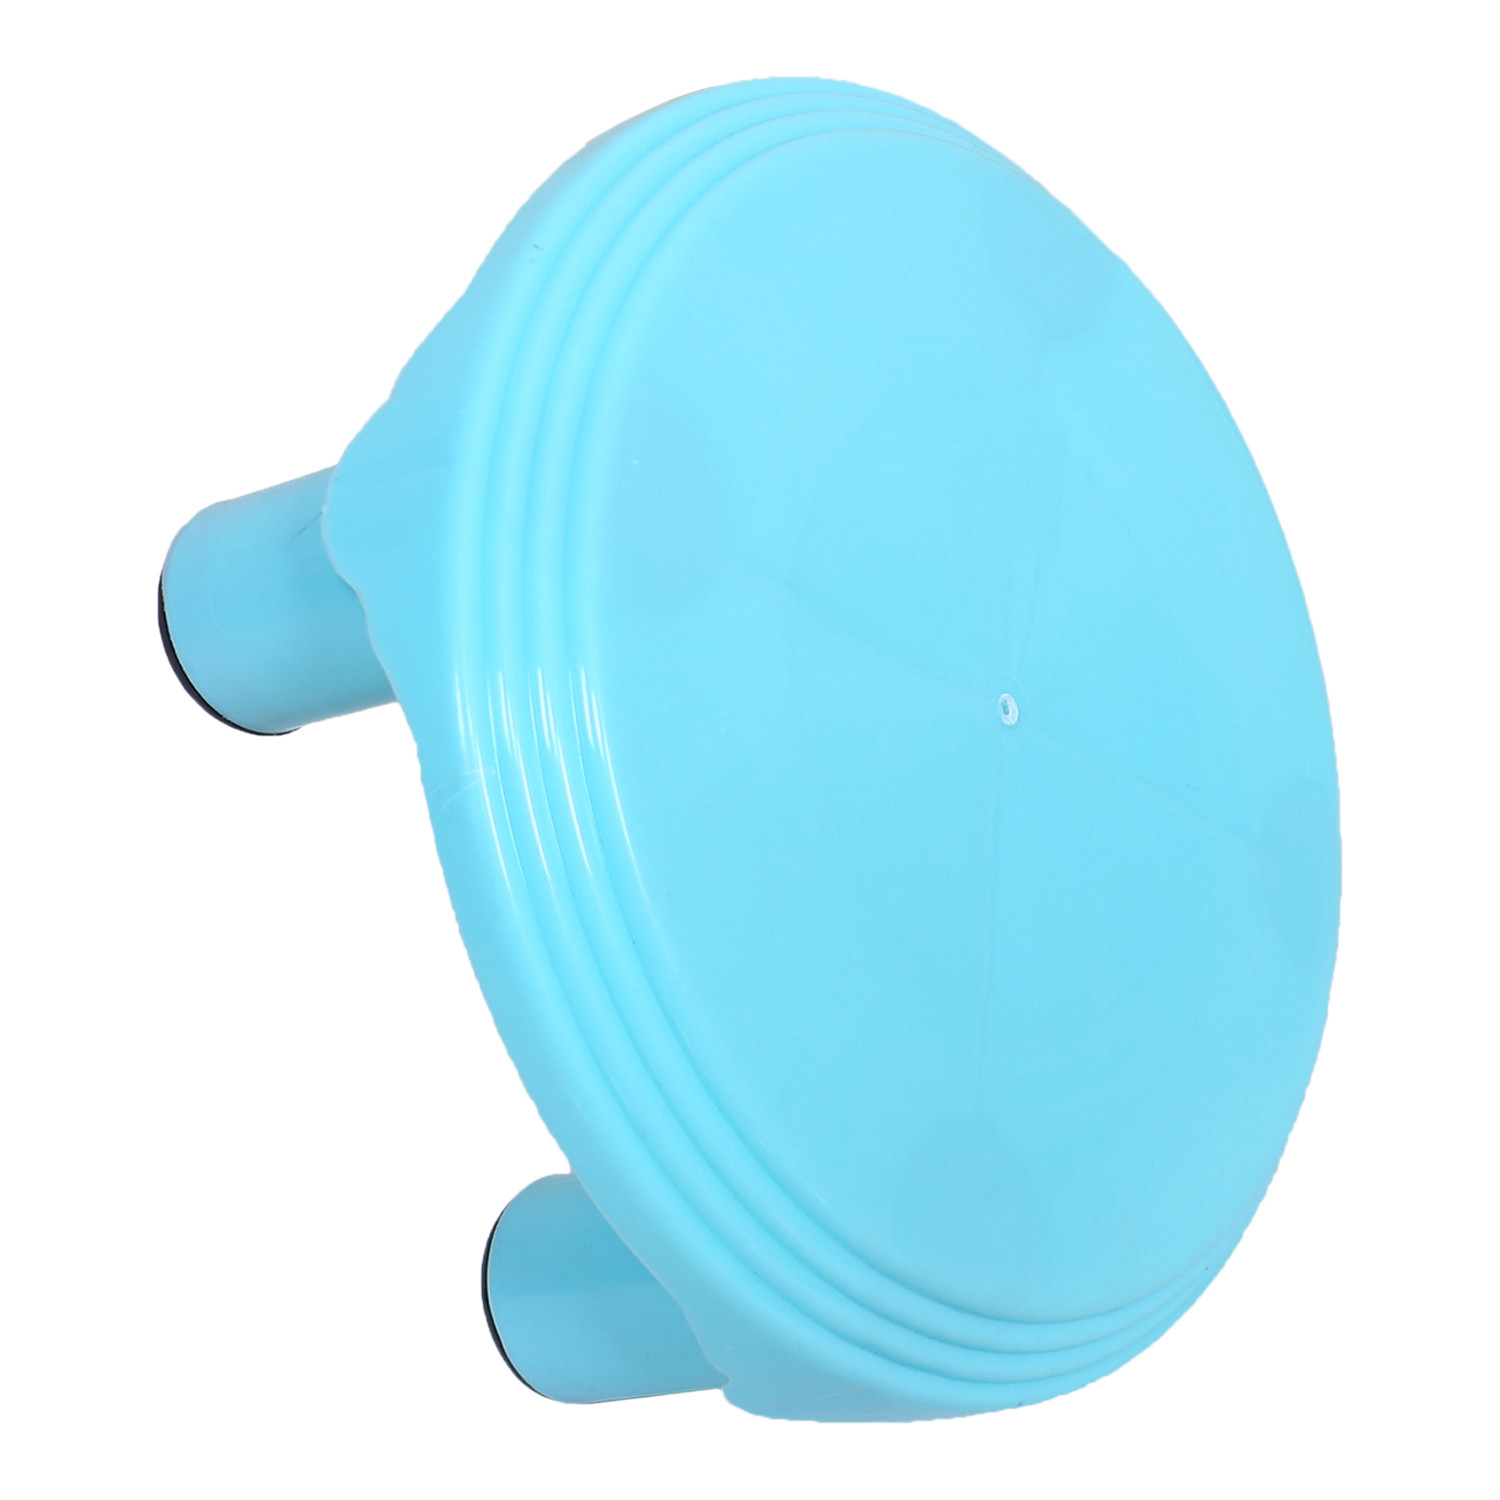 Kuber Industries Bathroom Stool|Plastic Stool|Anti-slip Bathing Stool|Stool for Senior Citizen|Patla for Bathroom|MINT GREEN